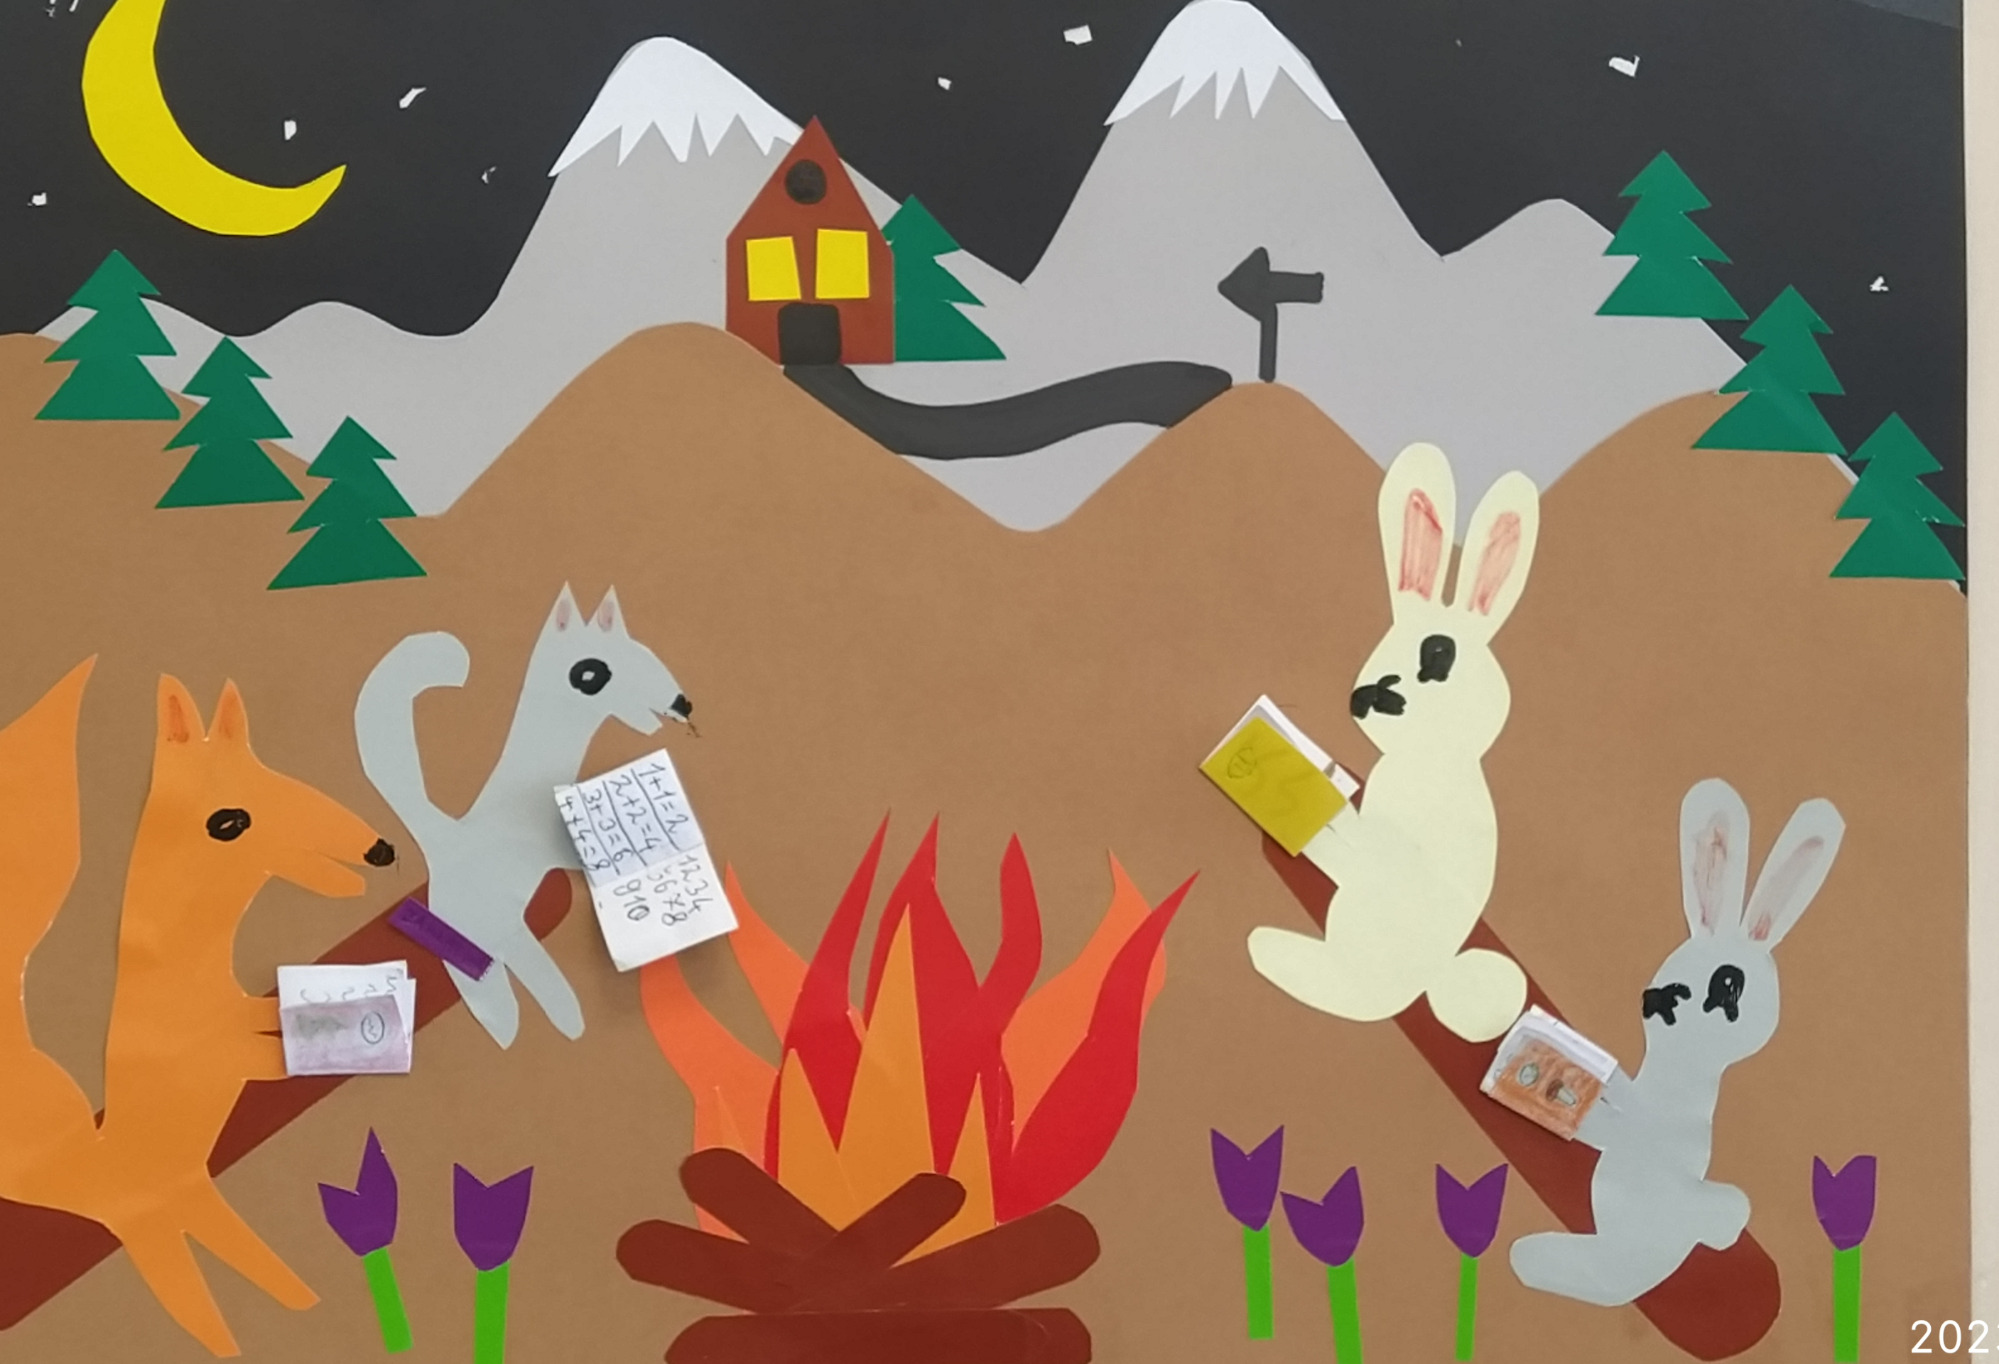 Zwycięska praca plastyczna – kolaż: noc w górach, przy ognisku zwierzęta leśne czytają książki.